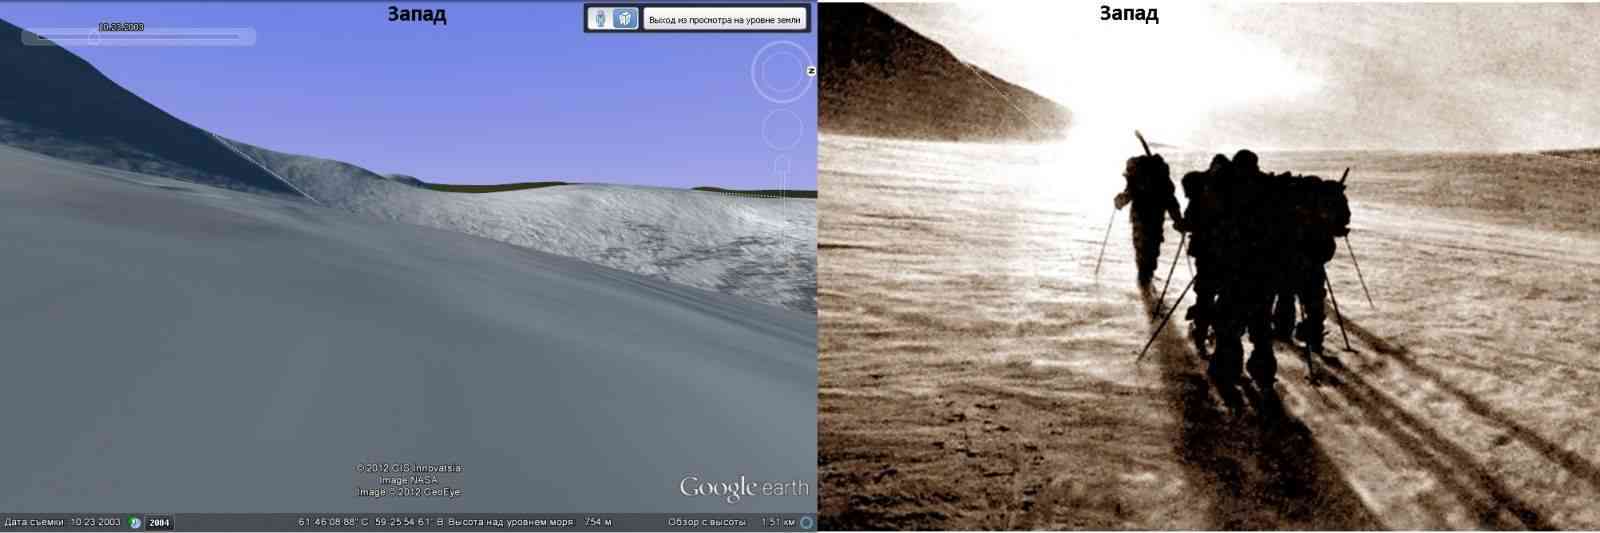 Сравнение - вид на район, где находилась группа Дятлова по Google Earth) и фотография неизвестной группы с того же места